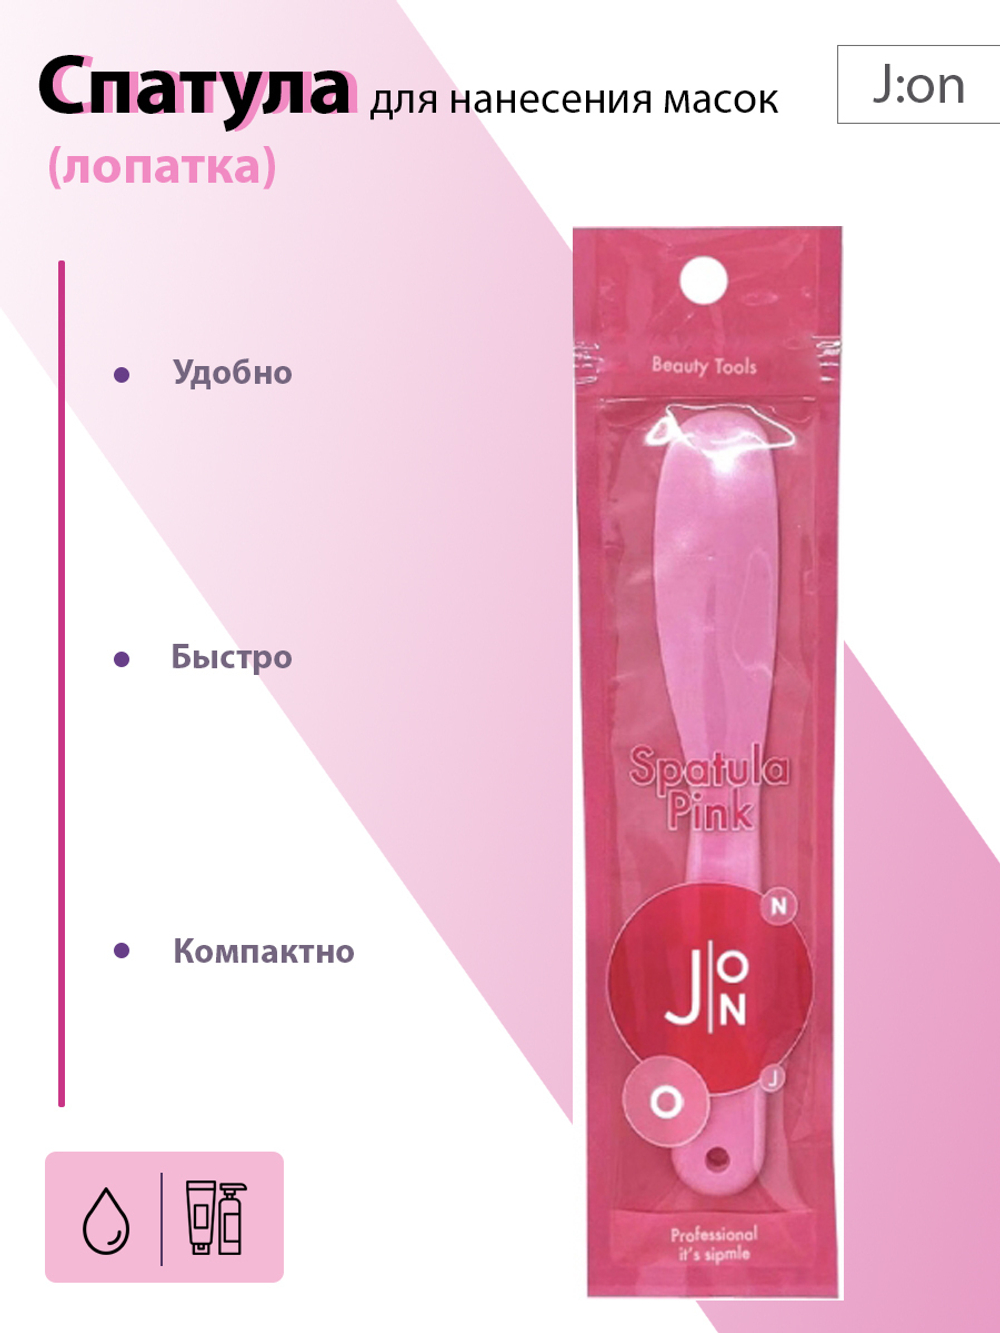 J:ON Spatula pink спатула (лопатка) для нанесения масок розовая